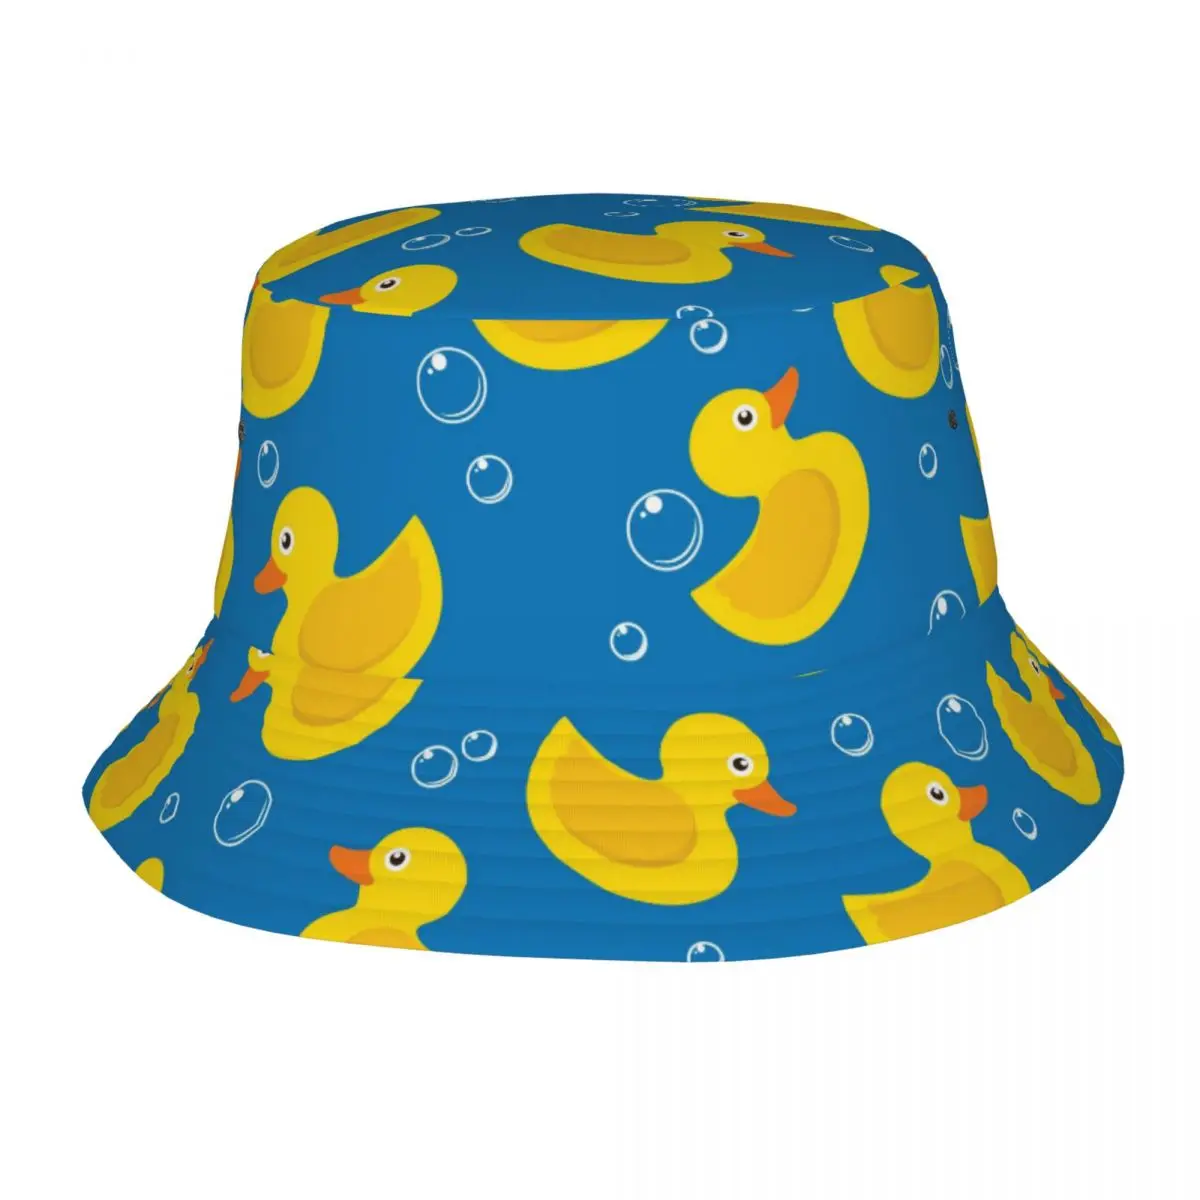 

Панама в стиле унисекс, летняя пляжная шапка с желтым резиновым узором, голубого цвета, для занятий спортом на свежем воздухе, рыбака